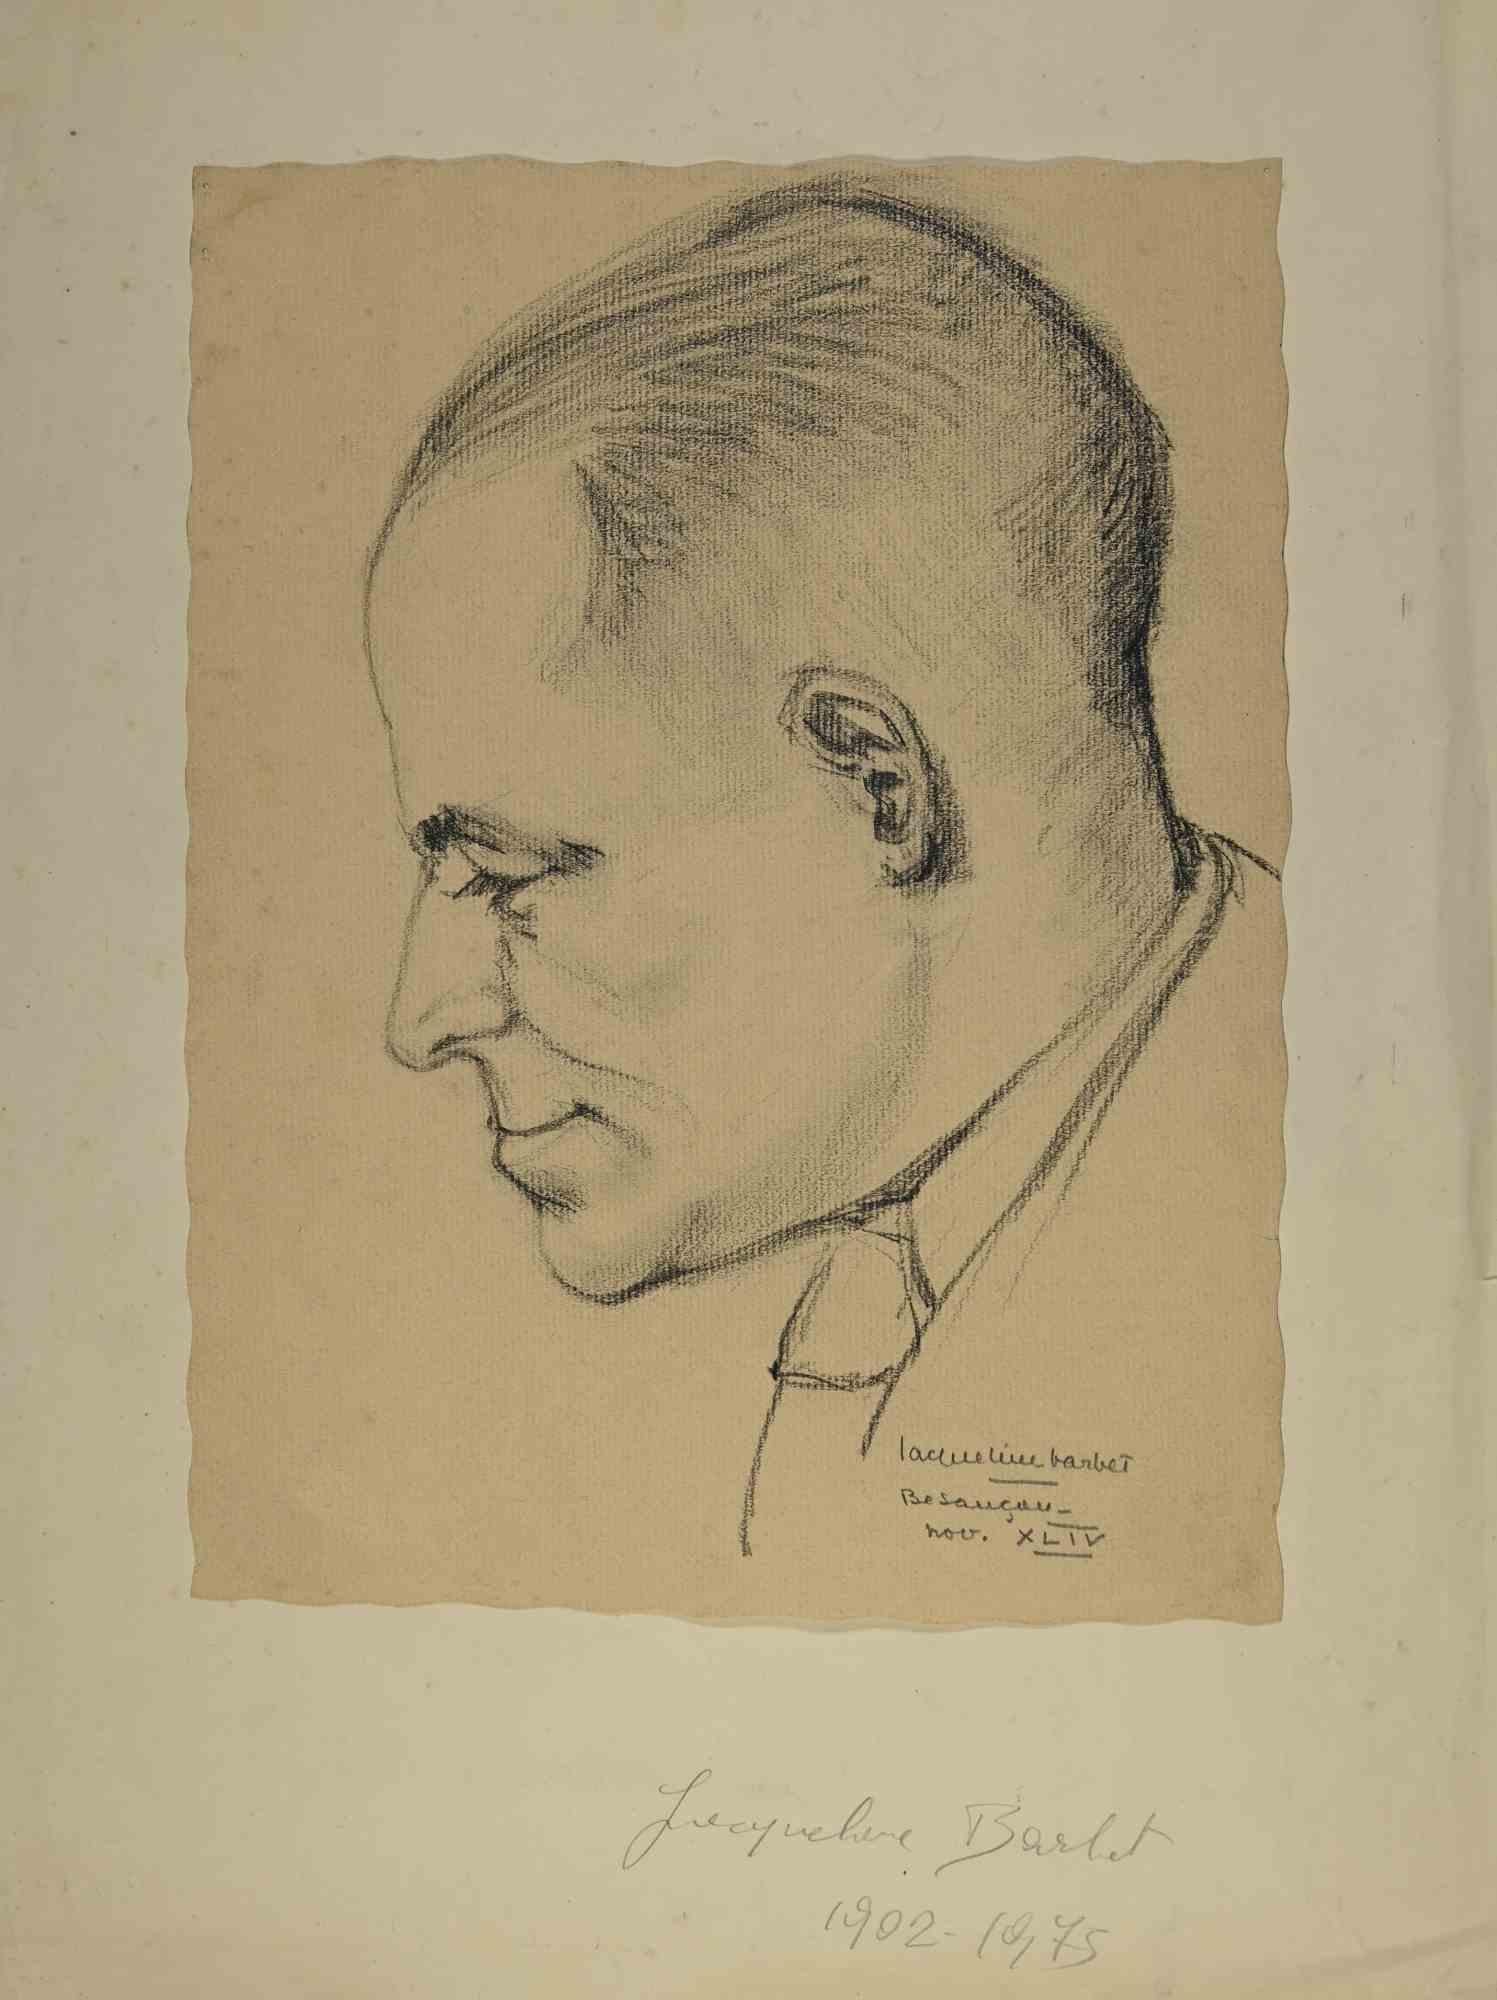 Das Porträt eines Mannes ist ein Kunstwerk der französischen Künstlerin Jacqueline Barbet (1902-1975) aus dem Jahr 1944.

Zeichnung Holzkohle auf Papier. Rechts unten am Rand mit Bleistift in römischen Ziffern vom Künstler handsigniert und